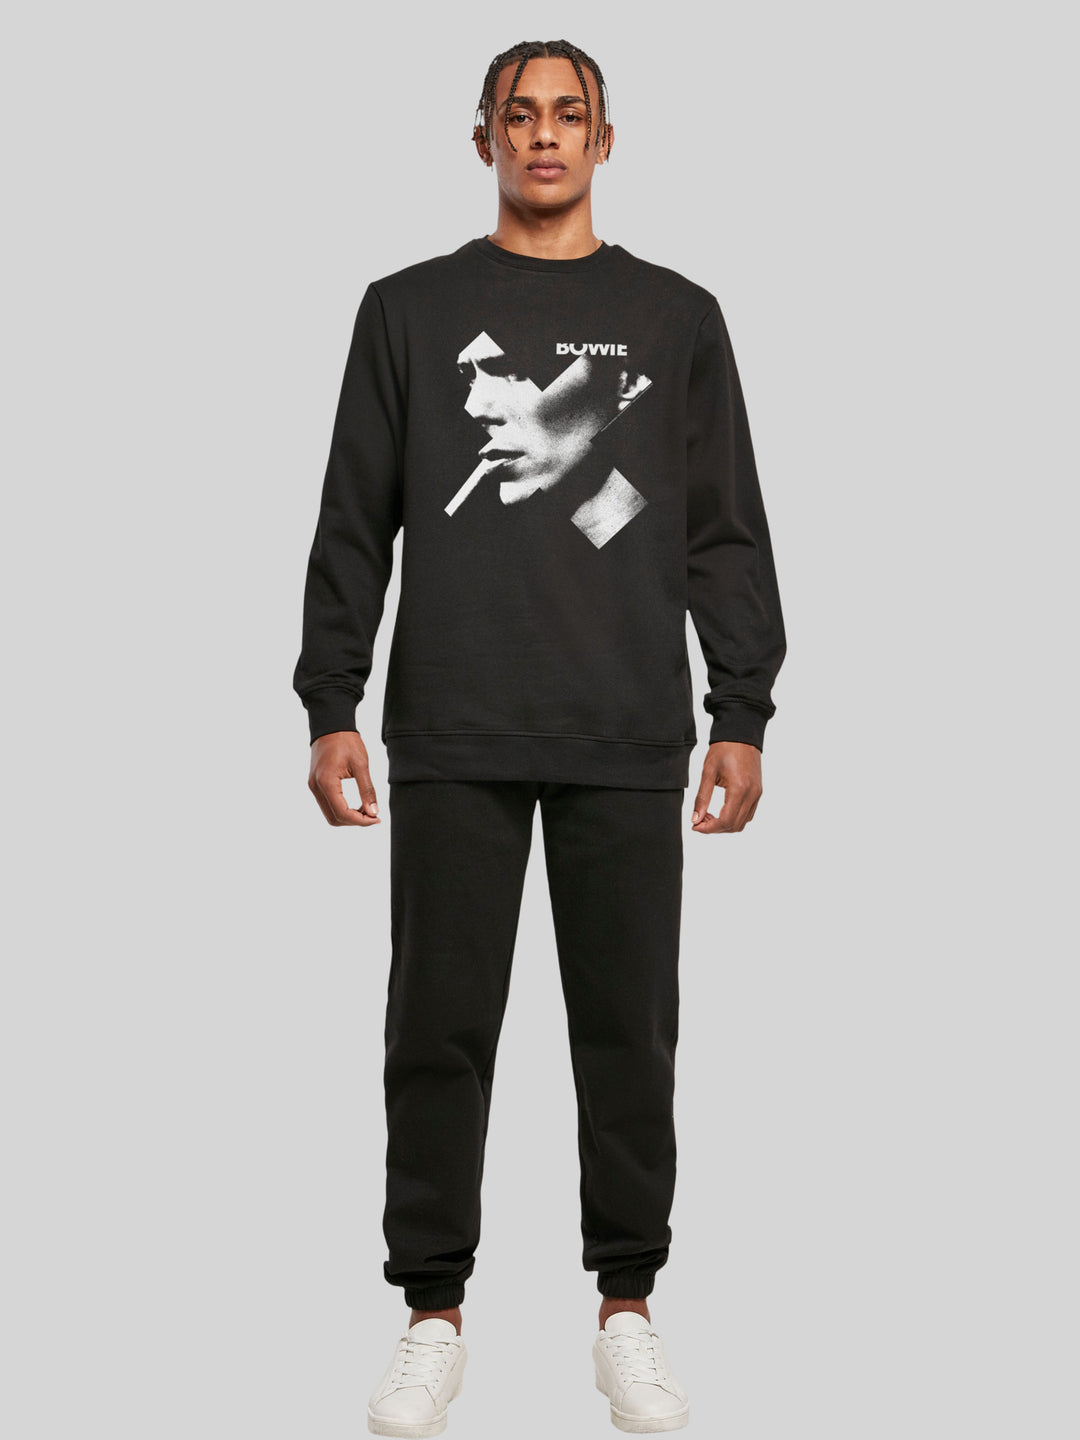 David Bowie Sweatshirt | Cross Smoke Men | Longsleeve Sweater